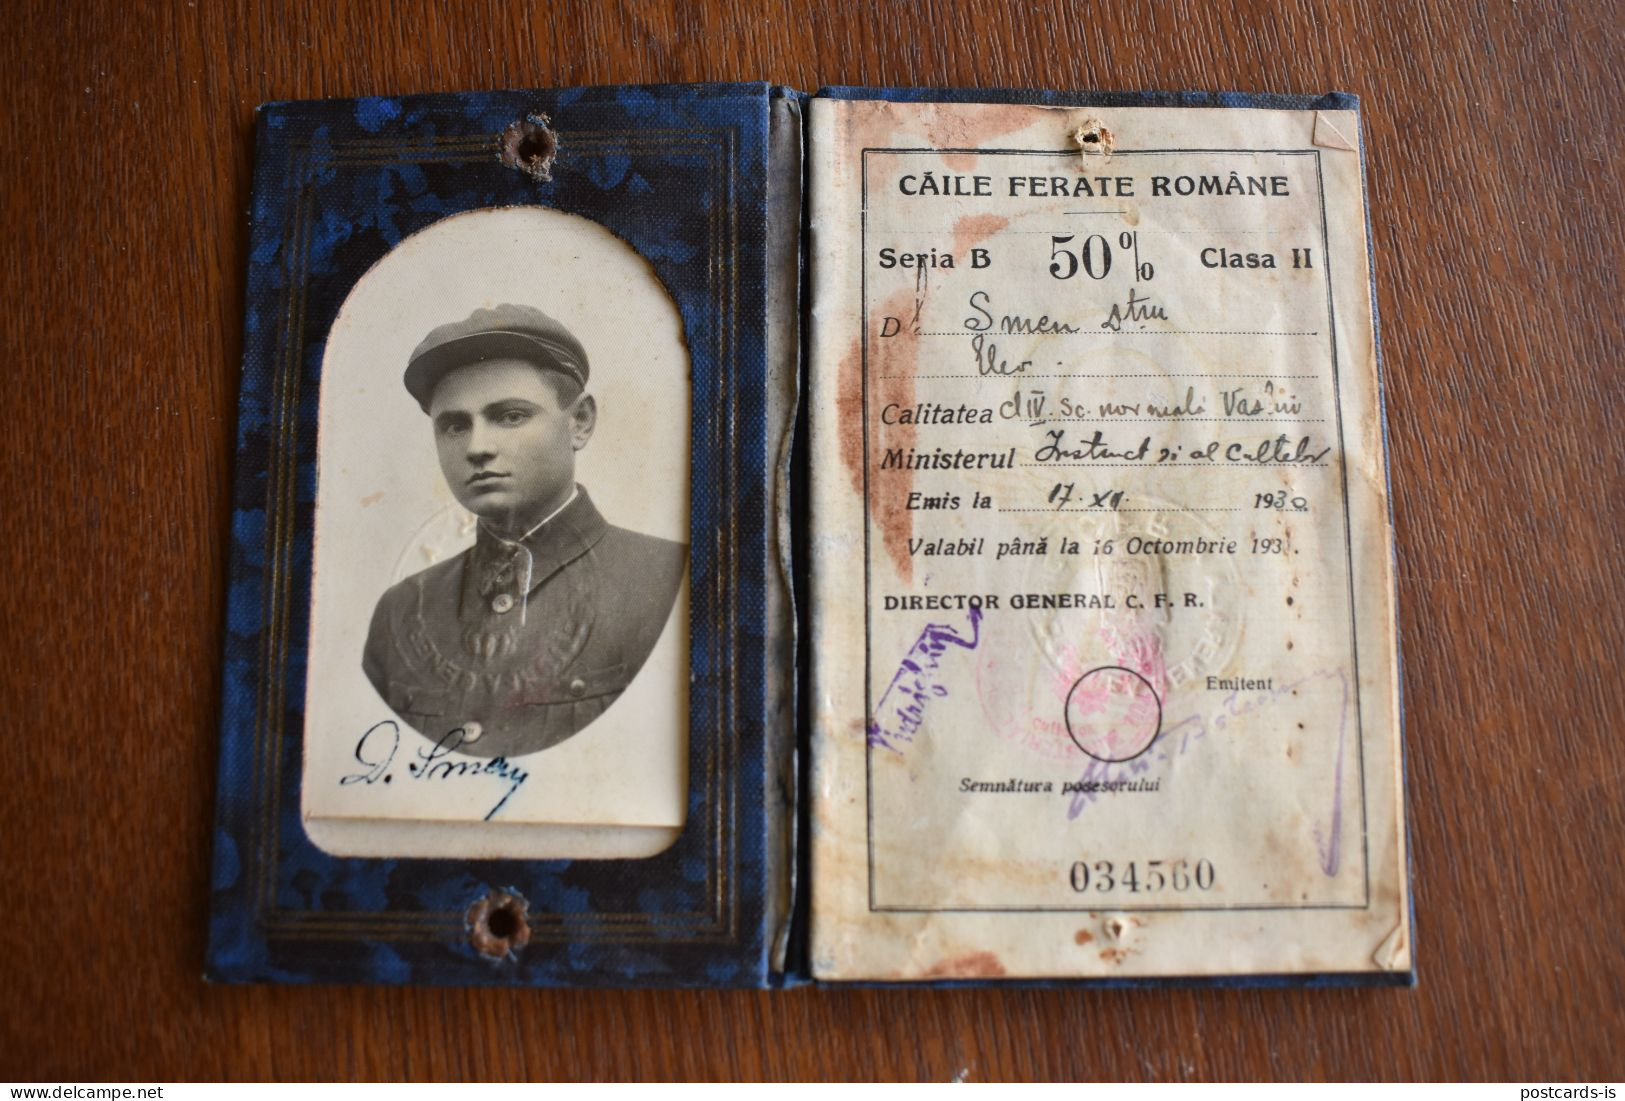 Legitimatie Romania CFR Caile Ferate Romane 1930 Carnet De Identitate Pentru Elevii Liceelor Militare Si Civile - Europe